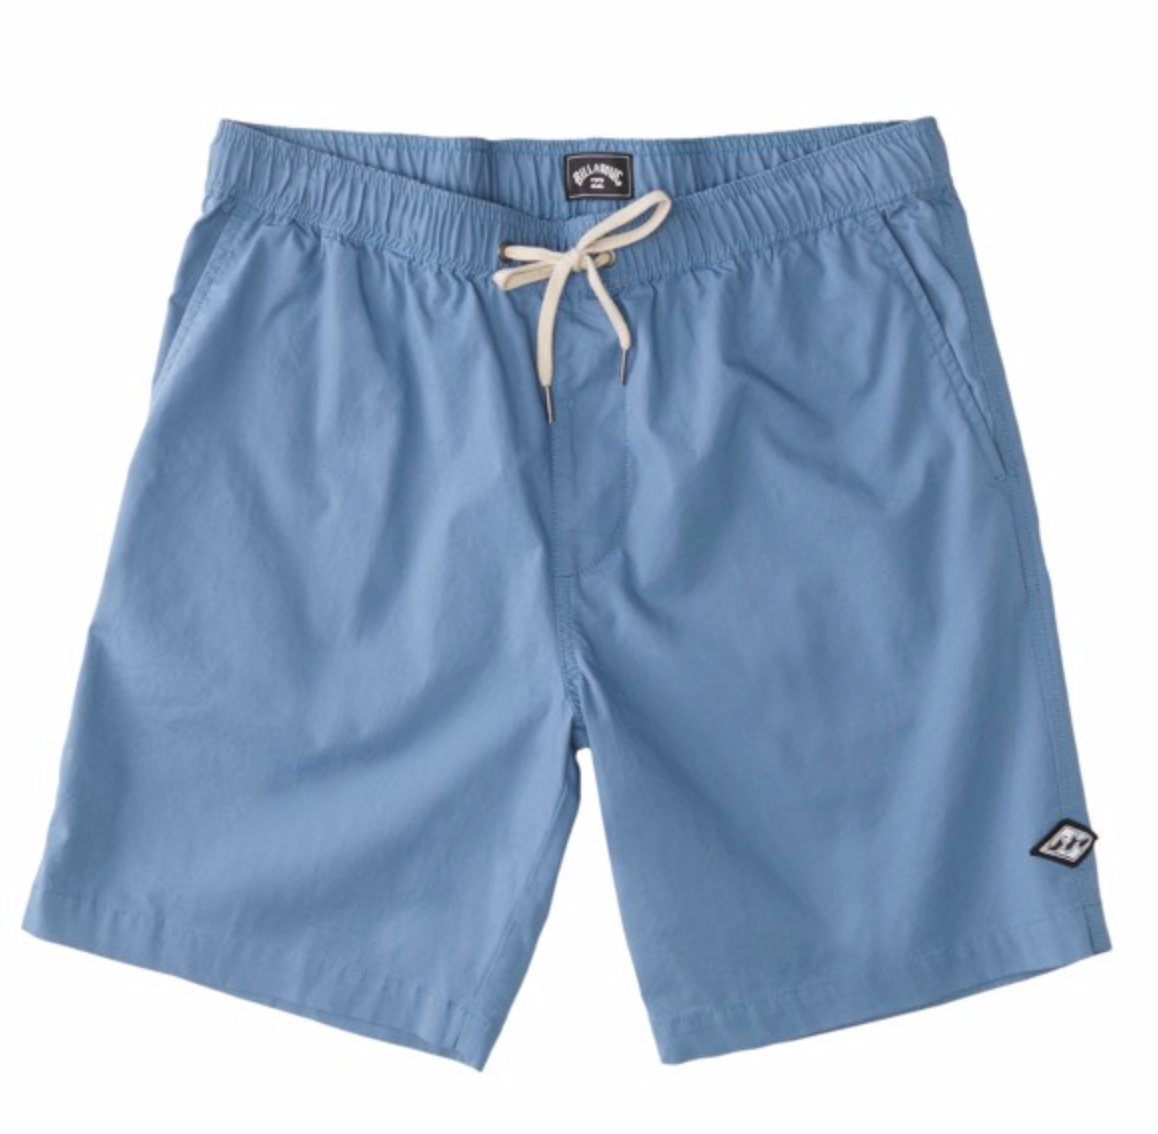 Billabong Mens Layback Solid Elasticated Shorts - Carolina Blue